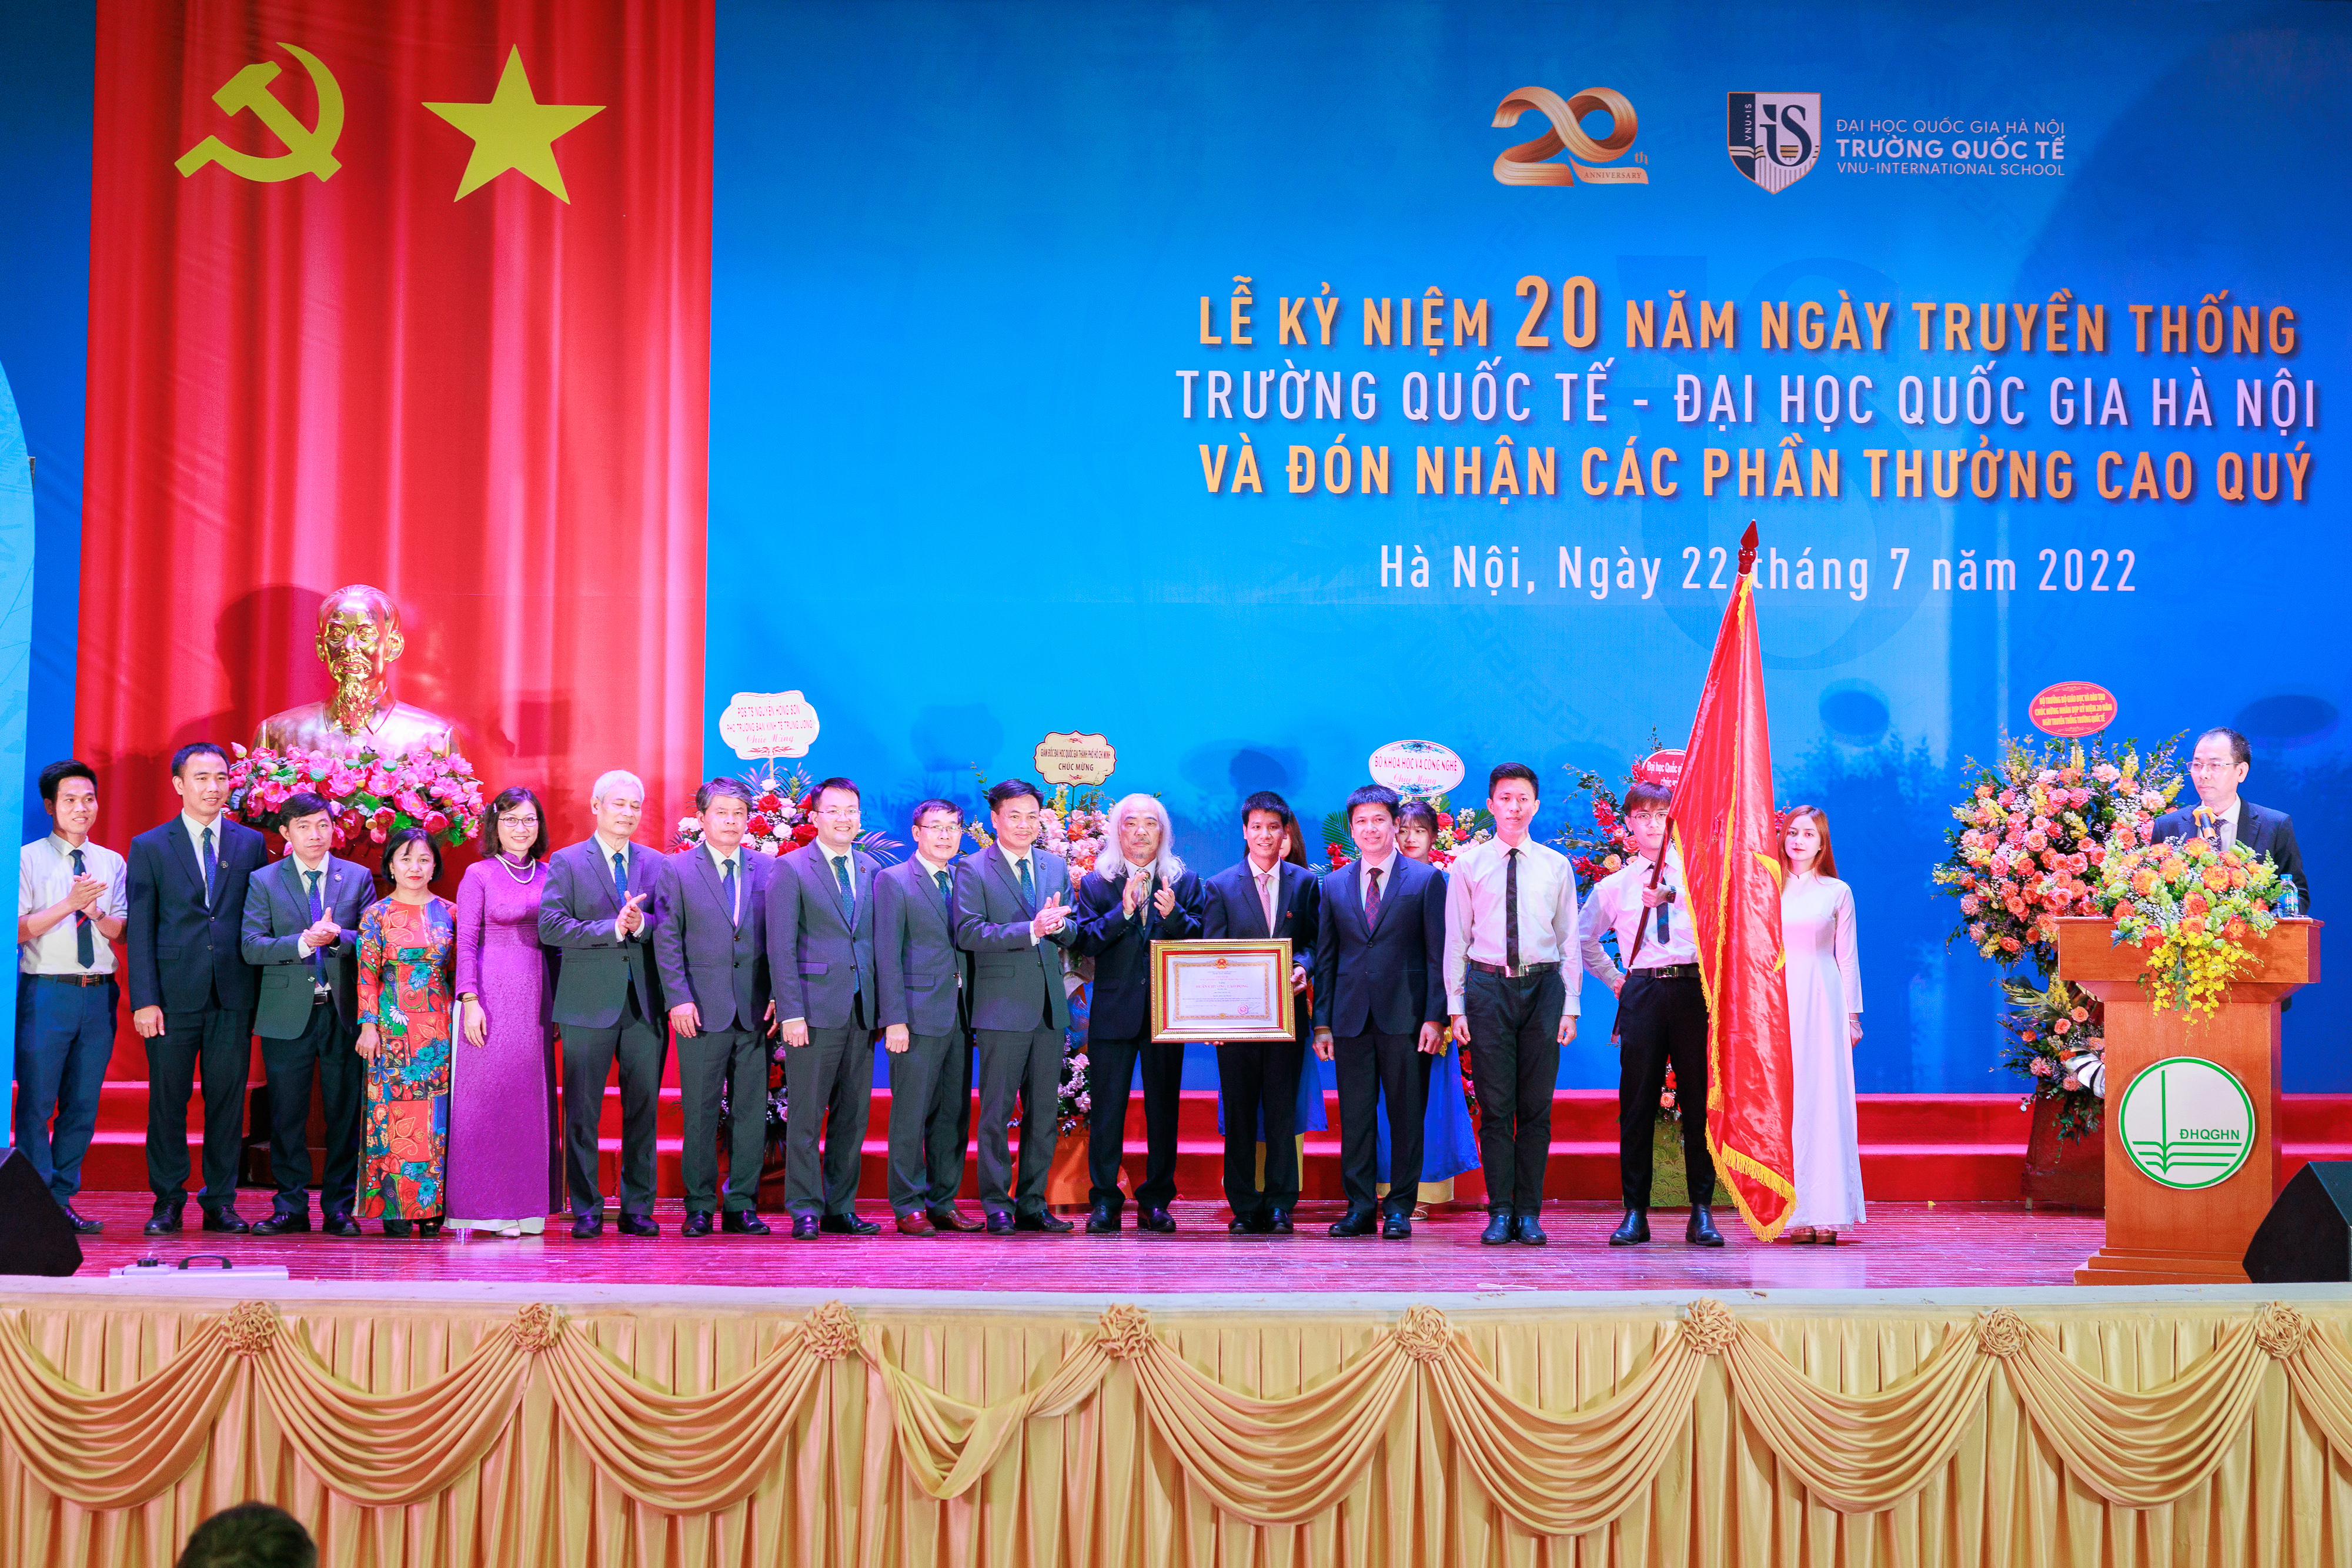 Trường Quốc tế - Đại học Quốc gia Hà Nội nhận Huân chương Lao động hạng Ba và Cờ thi đua